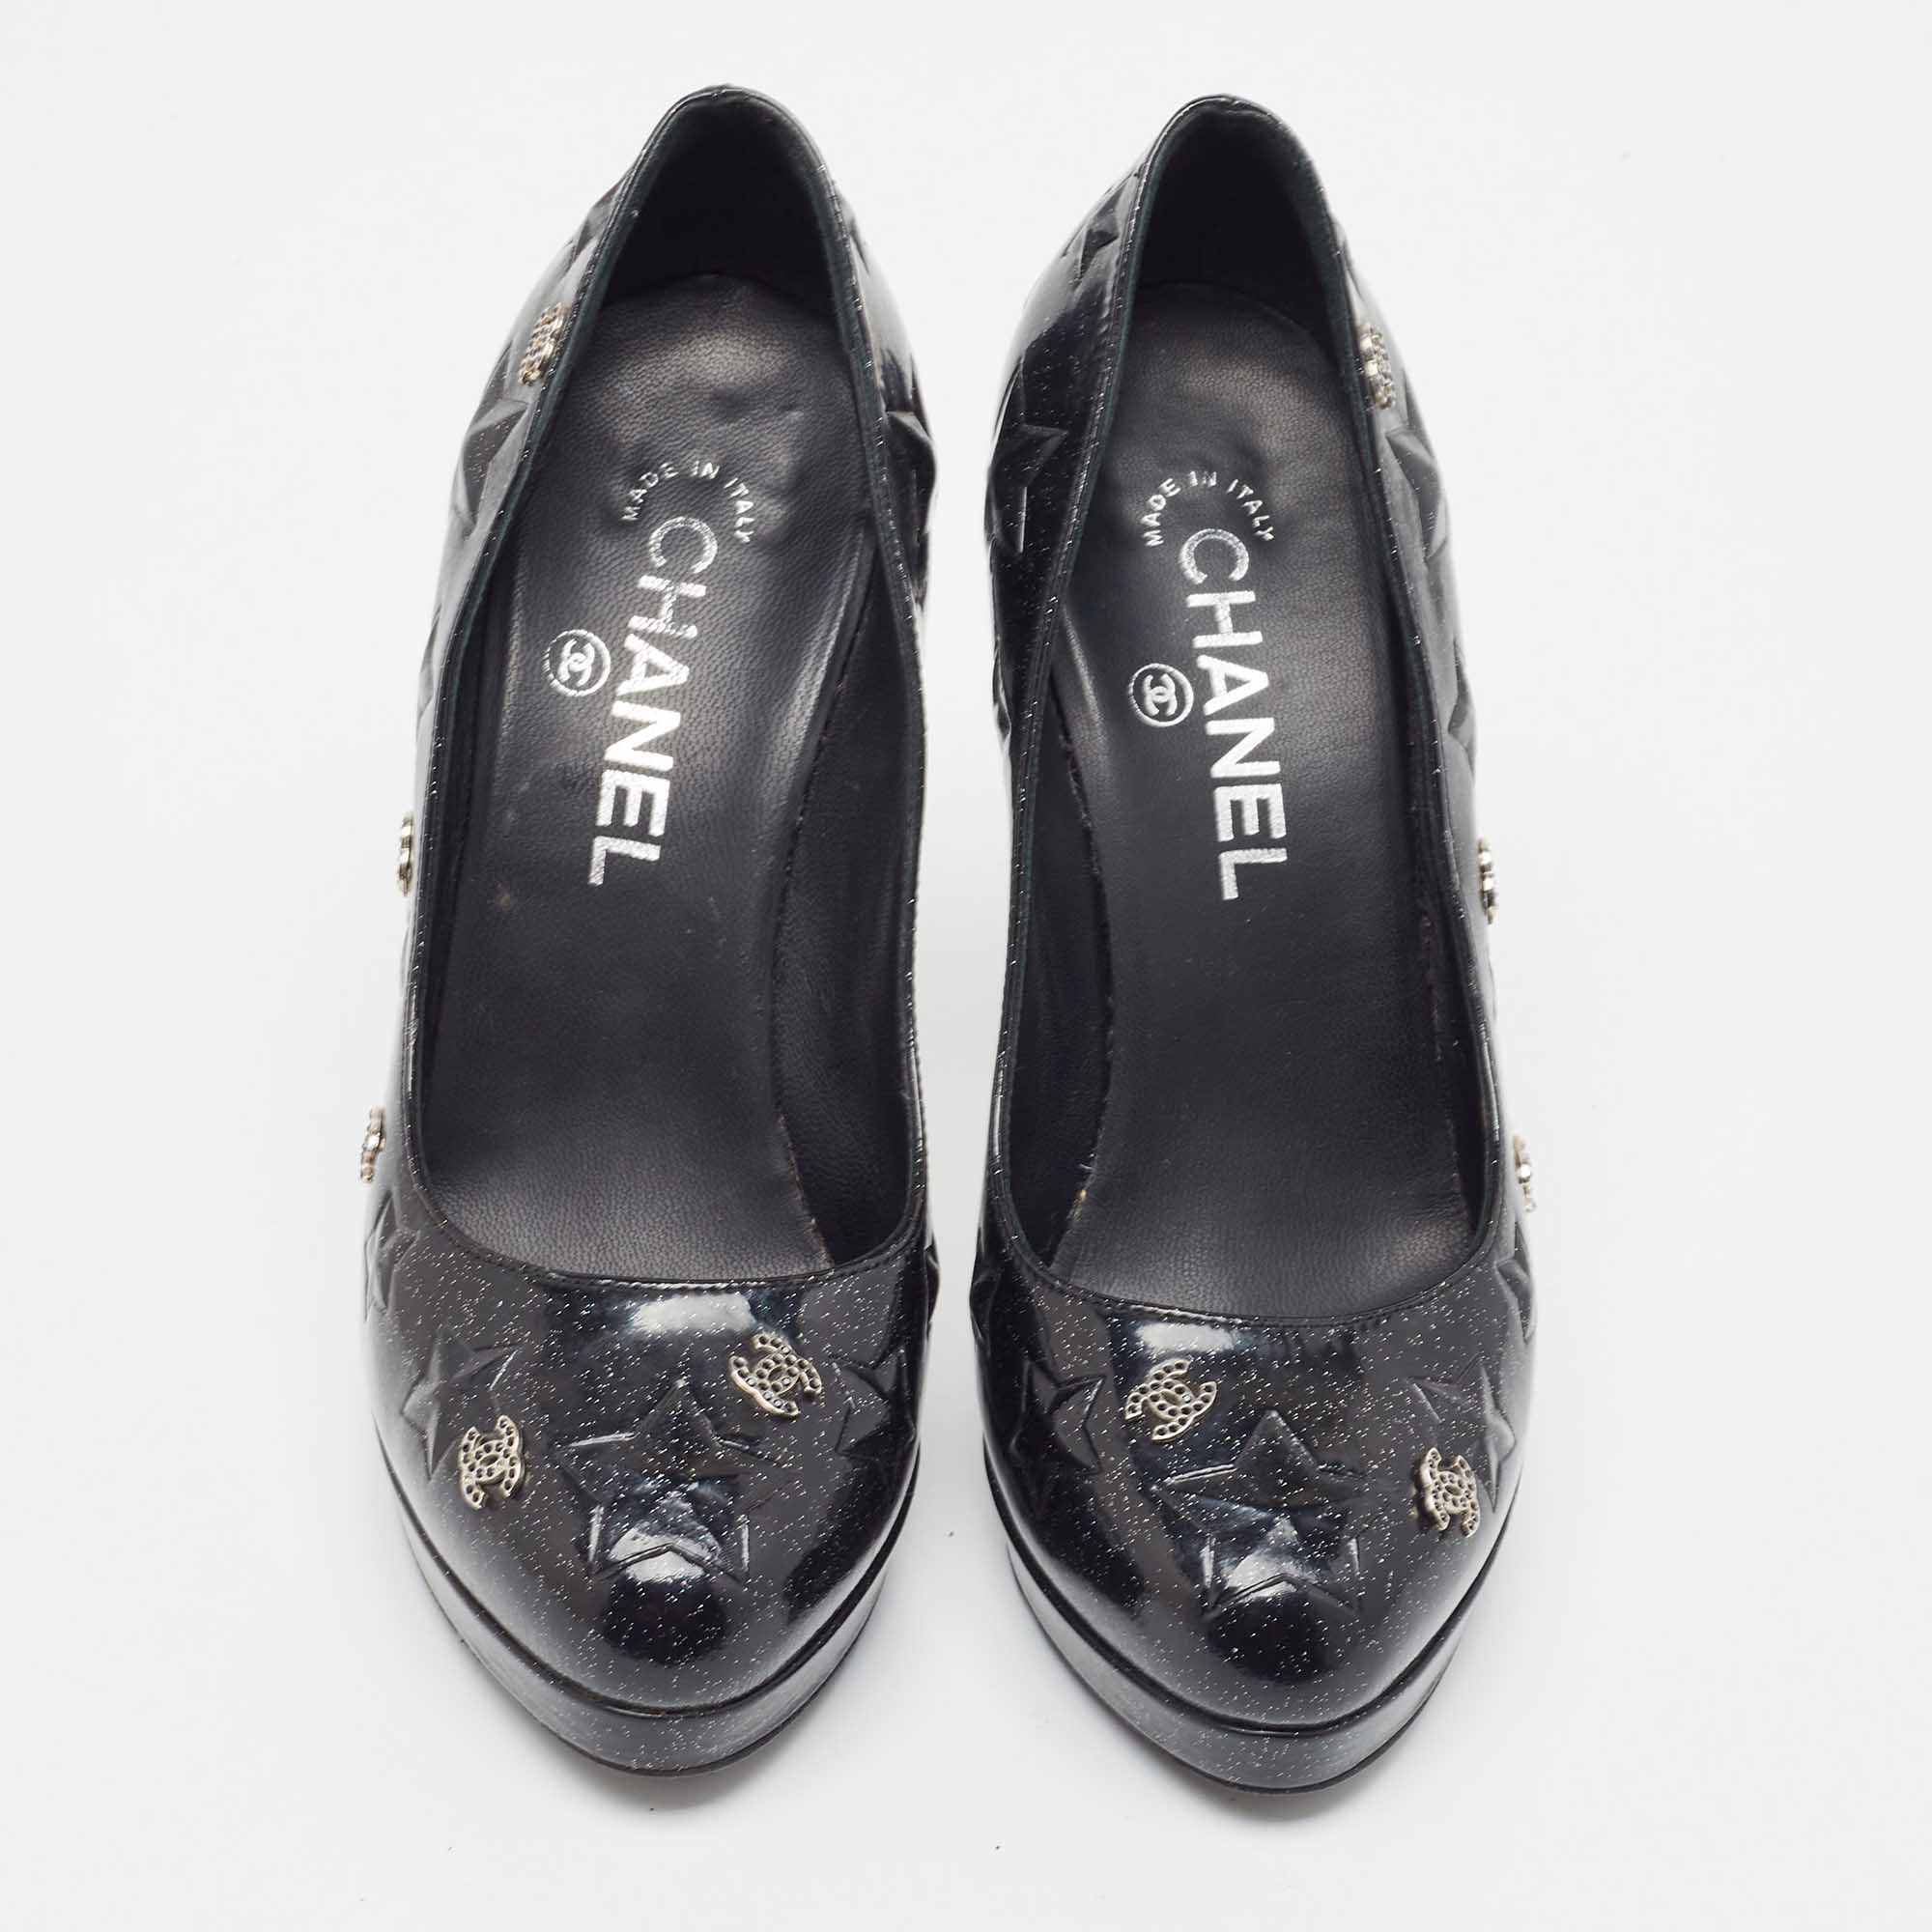 Chanel Black Glitter Star Embossed Patent Leather CC Embellished Platform Pumps Size 37